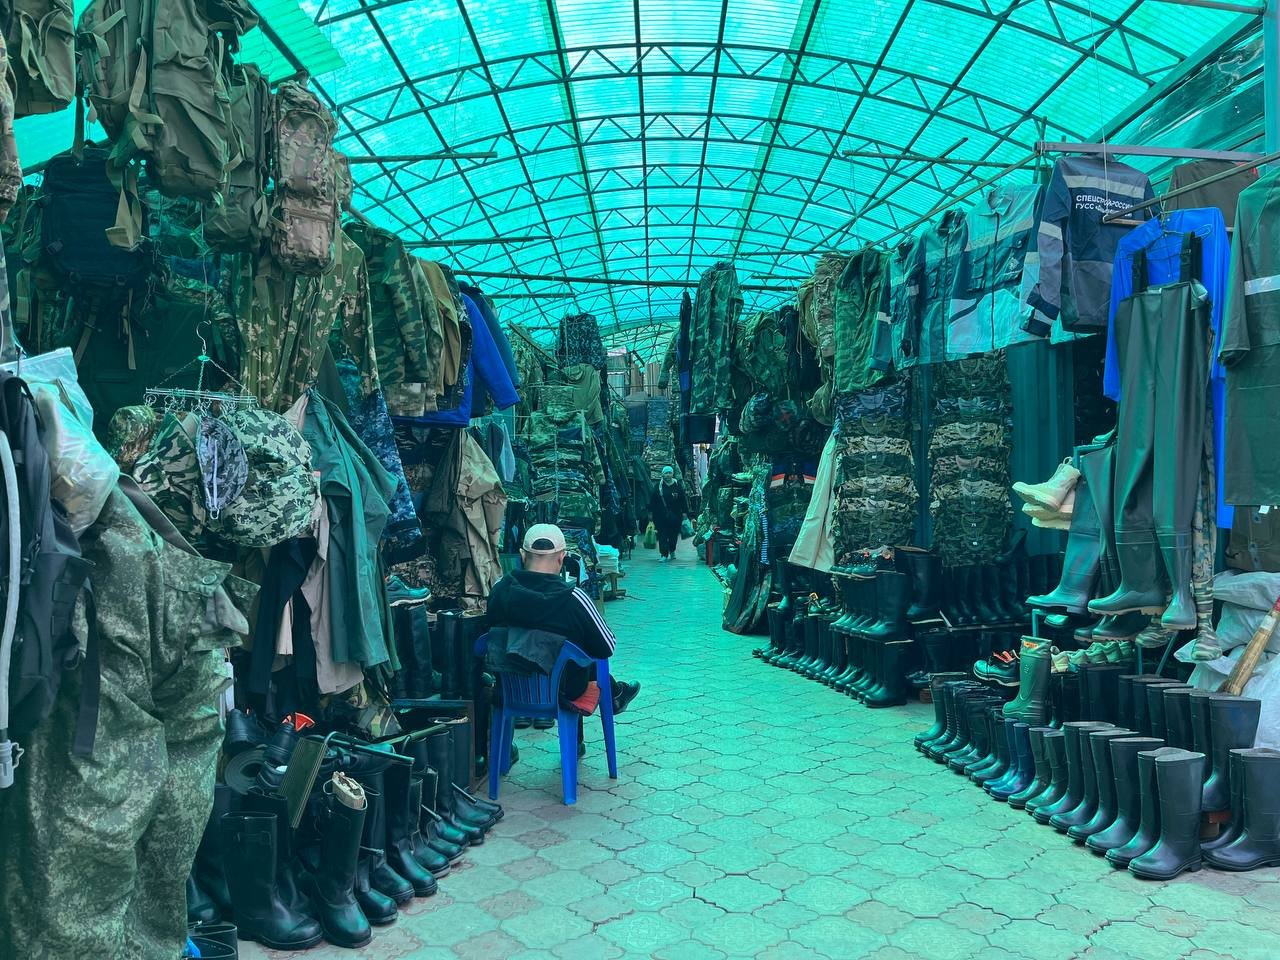 Військова форма і супутні товари на базарі "Киял" в Бішкеку, столиці Киргизстана. Фото автора